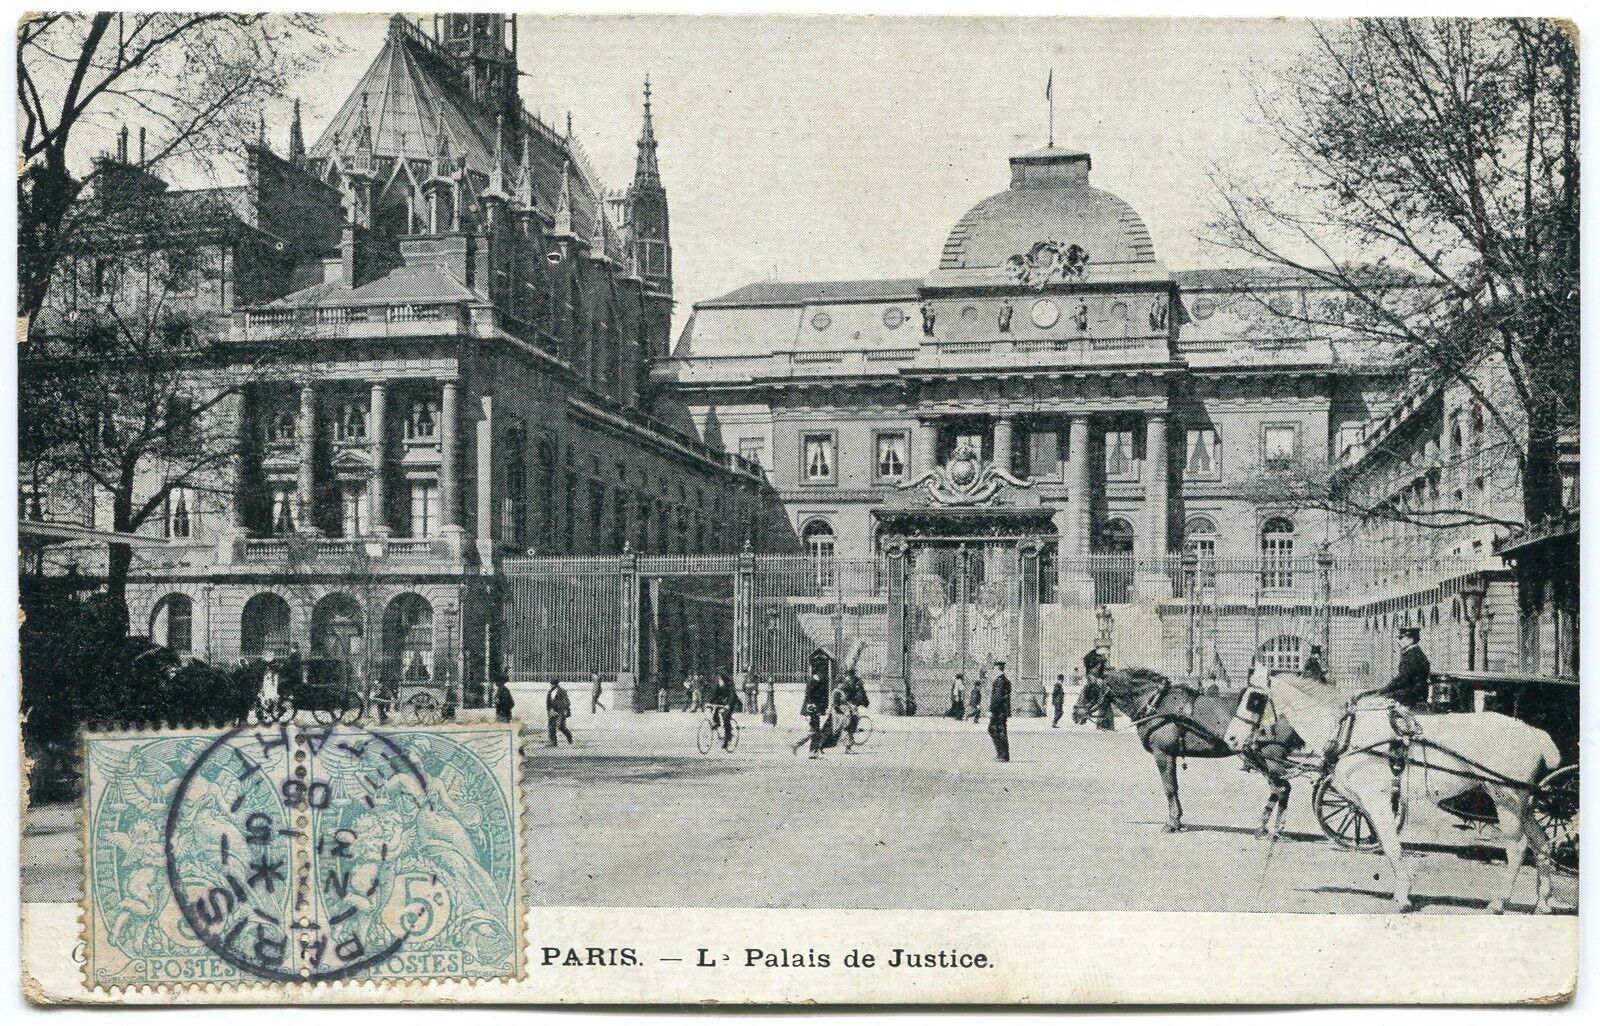 CARTE POSTALE PARIS 1905 PALAIS DE JUSTICE 400335058025